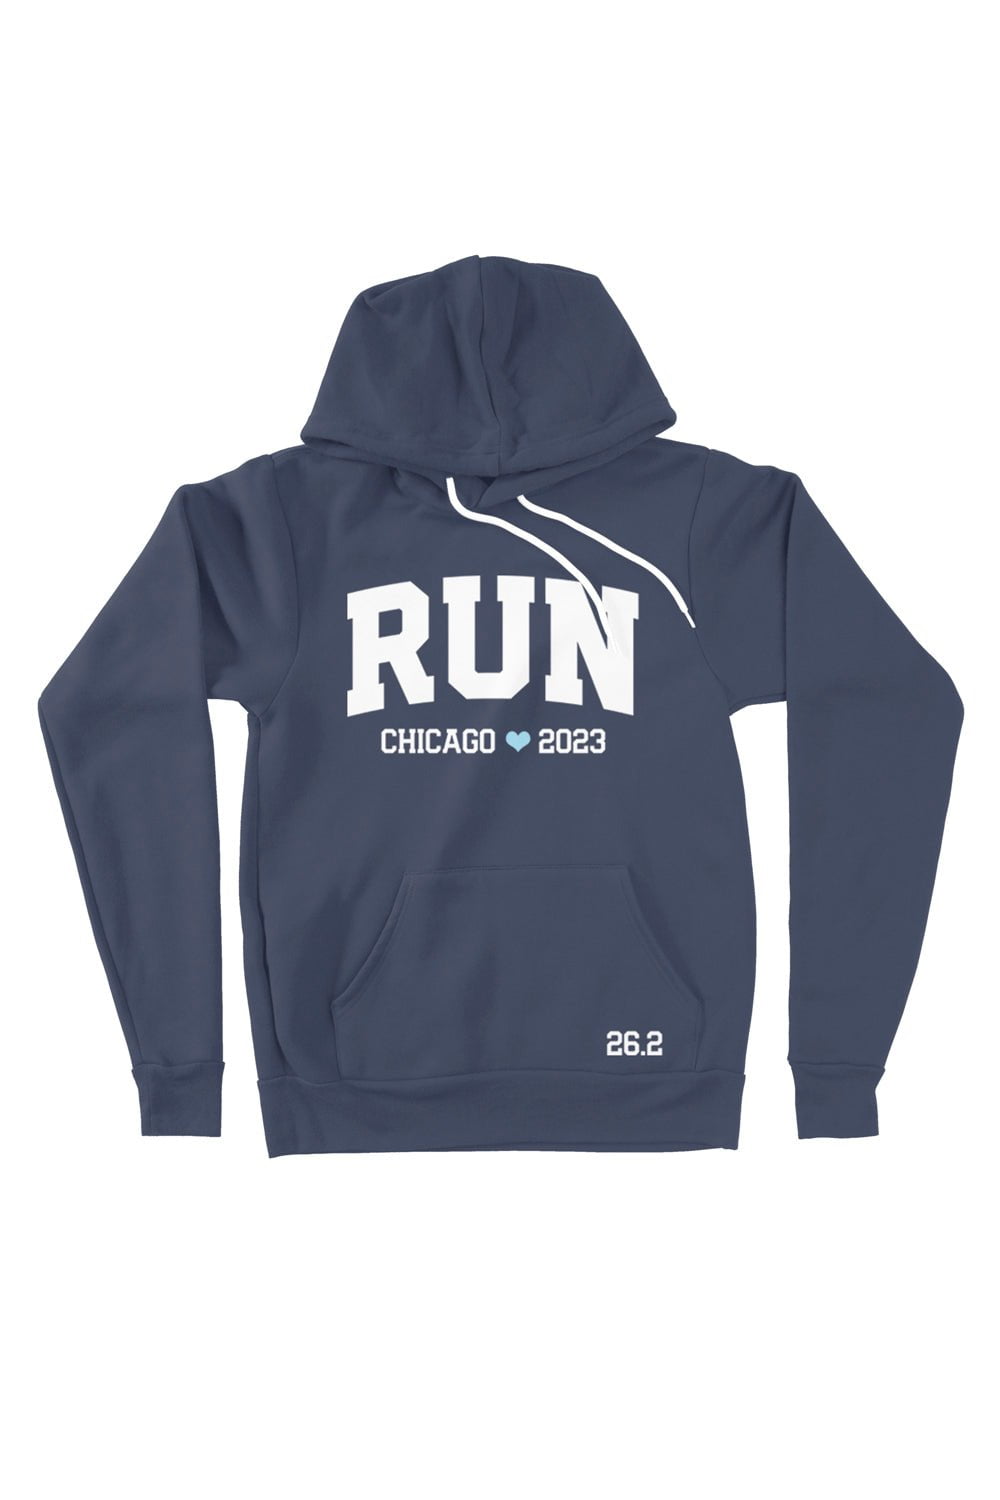 Chicago marathon clothes